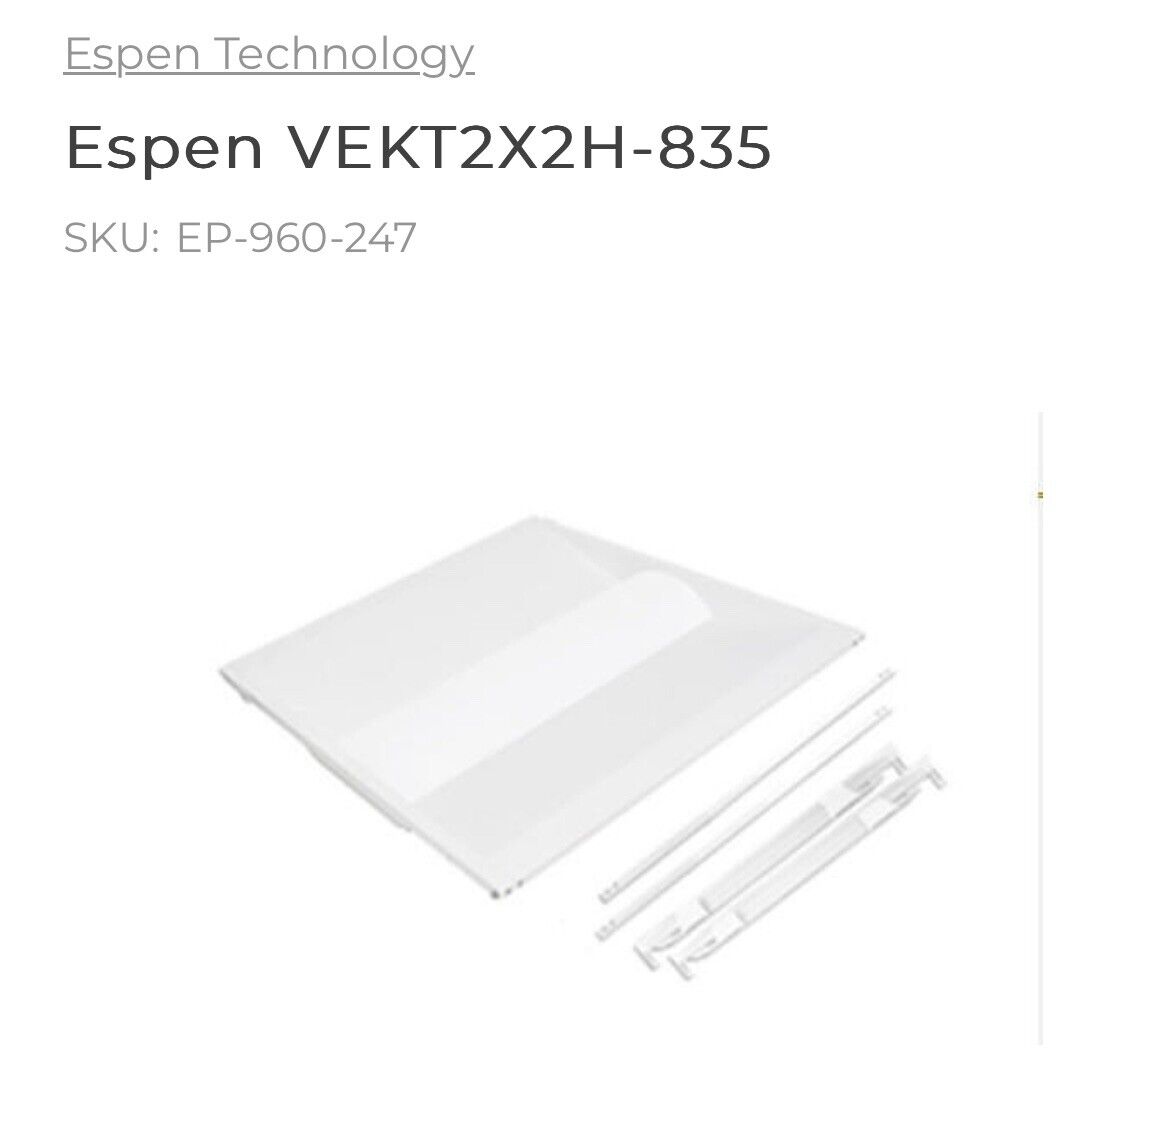 Espen VEKT2X2H-835 2x2 LED Retro Fit Kit